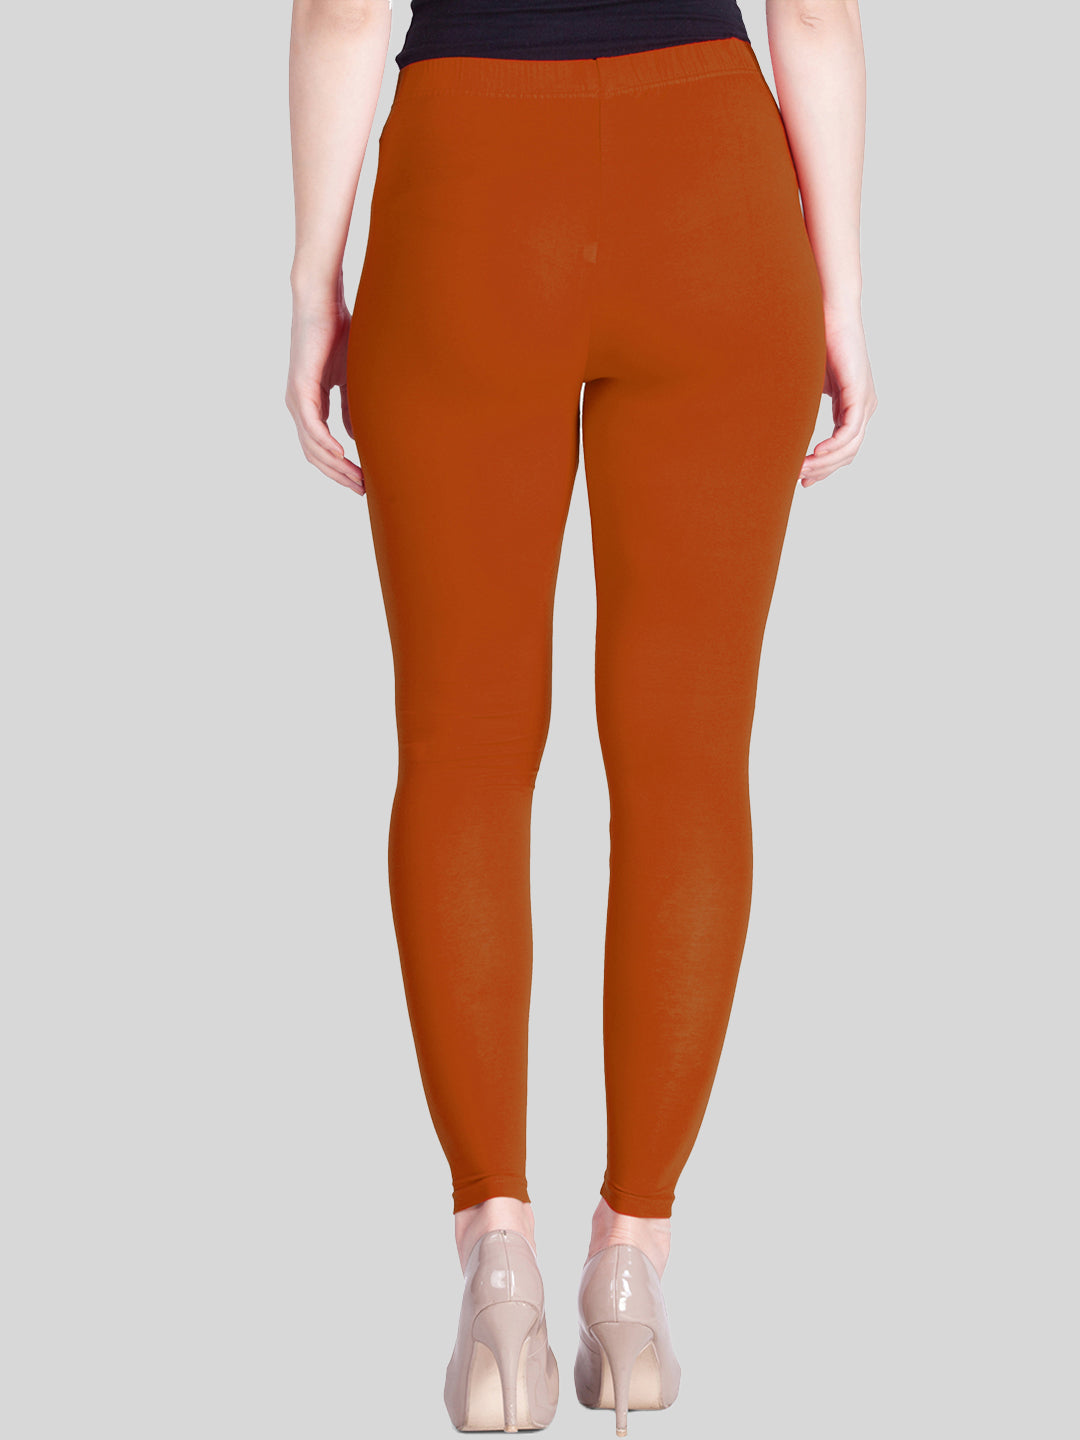 Cotton Plain Ladies Dark Orange Straight Fit Leggings at Rs 170 in New Delhi